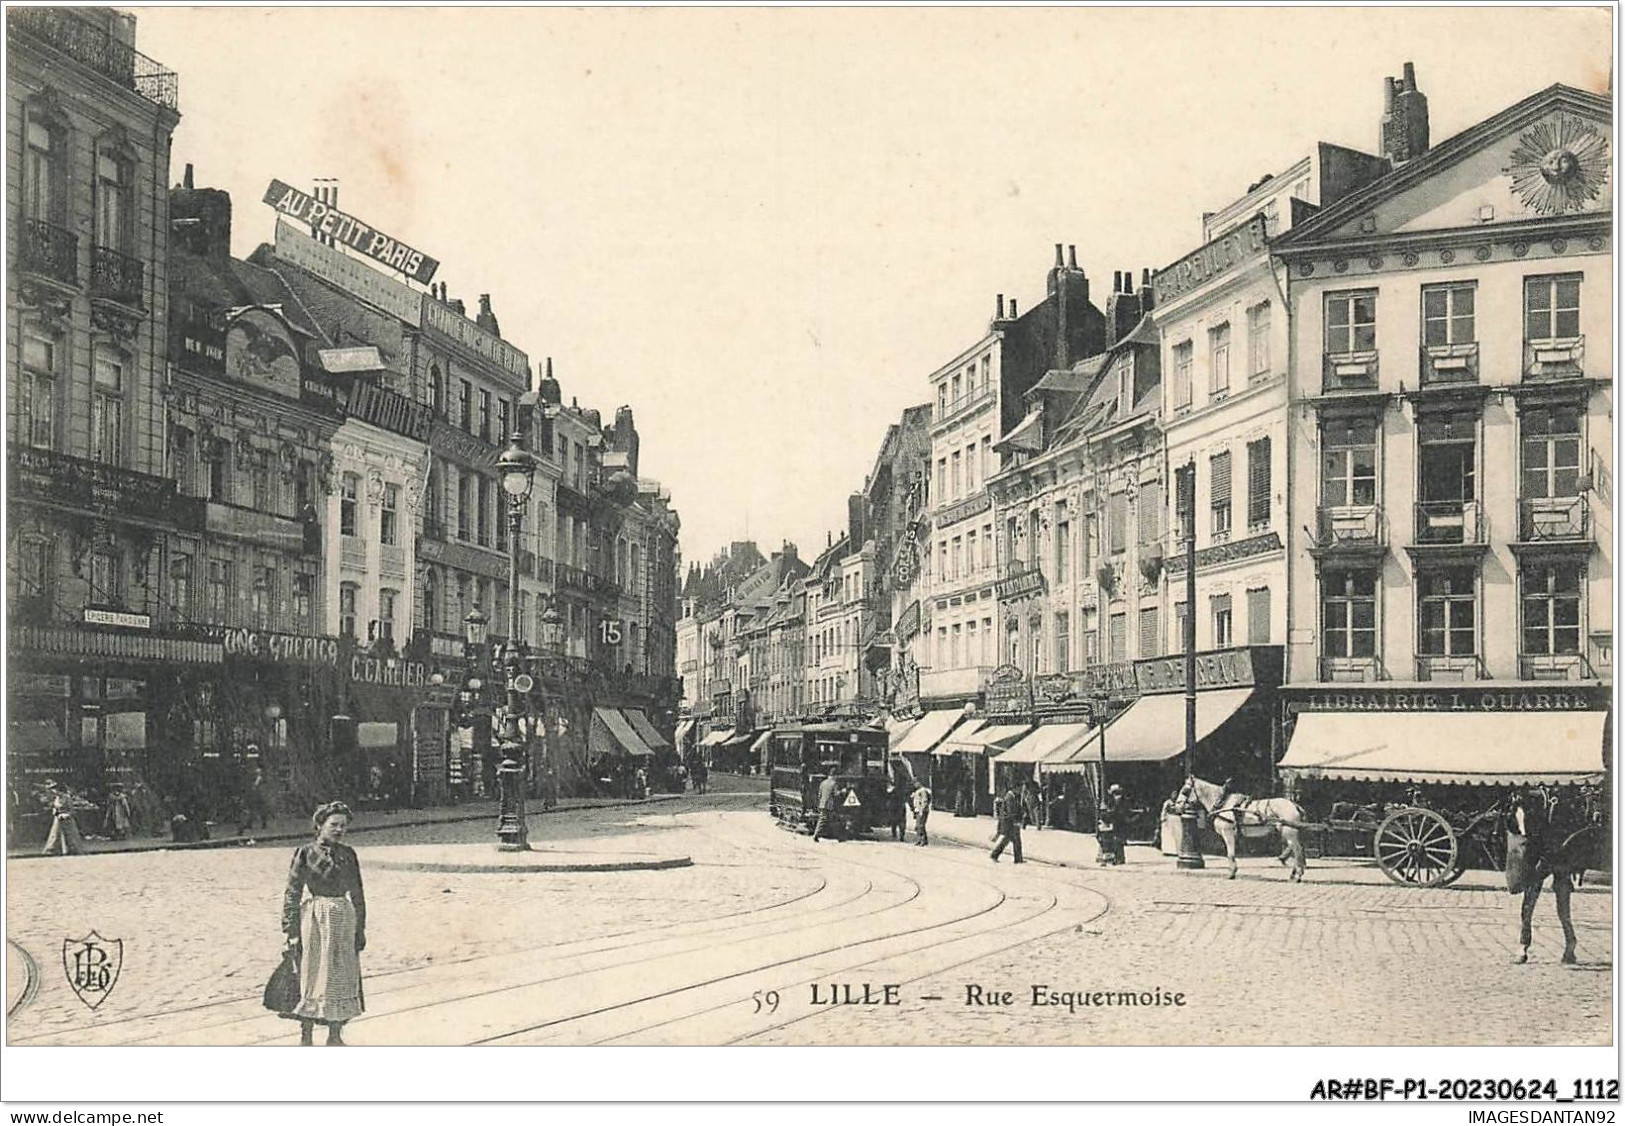 AR#BFP1-59-0557 - LILLE - Rue Esquermoise - Commerces, Librairie, Au Petit Paris - Lille